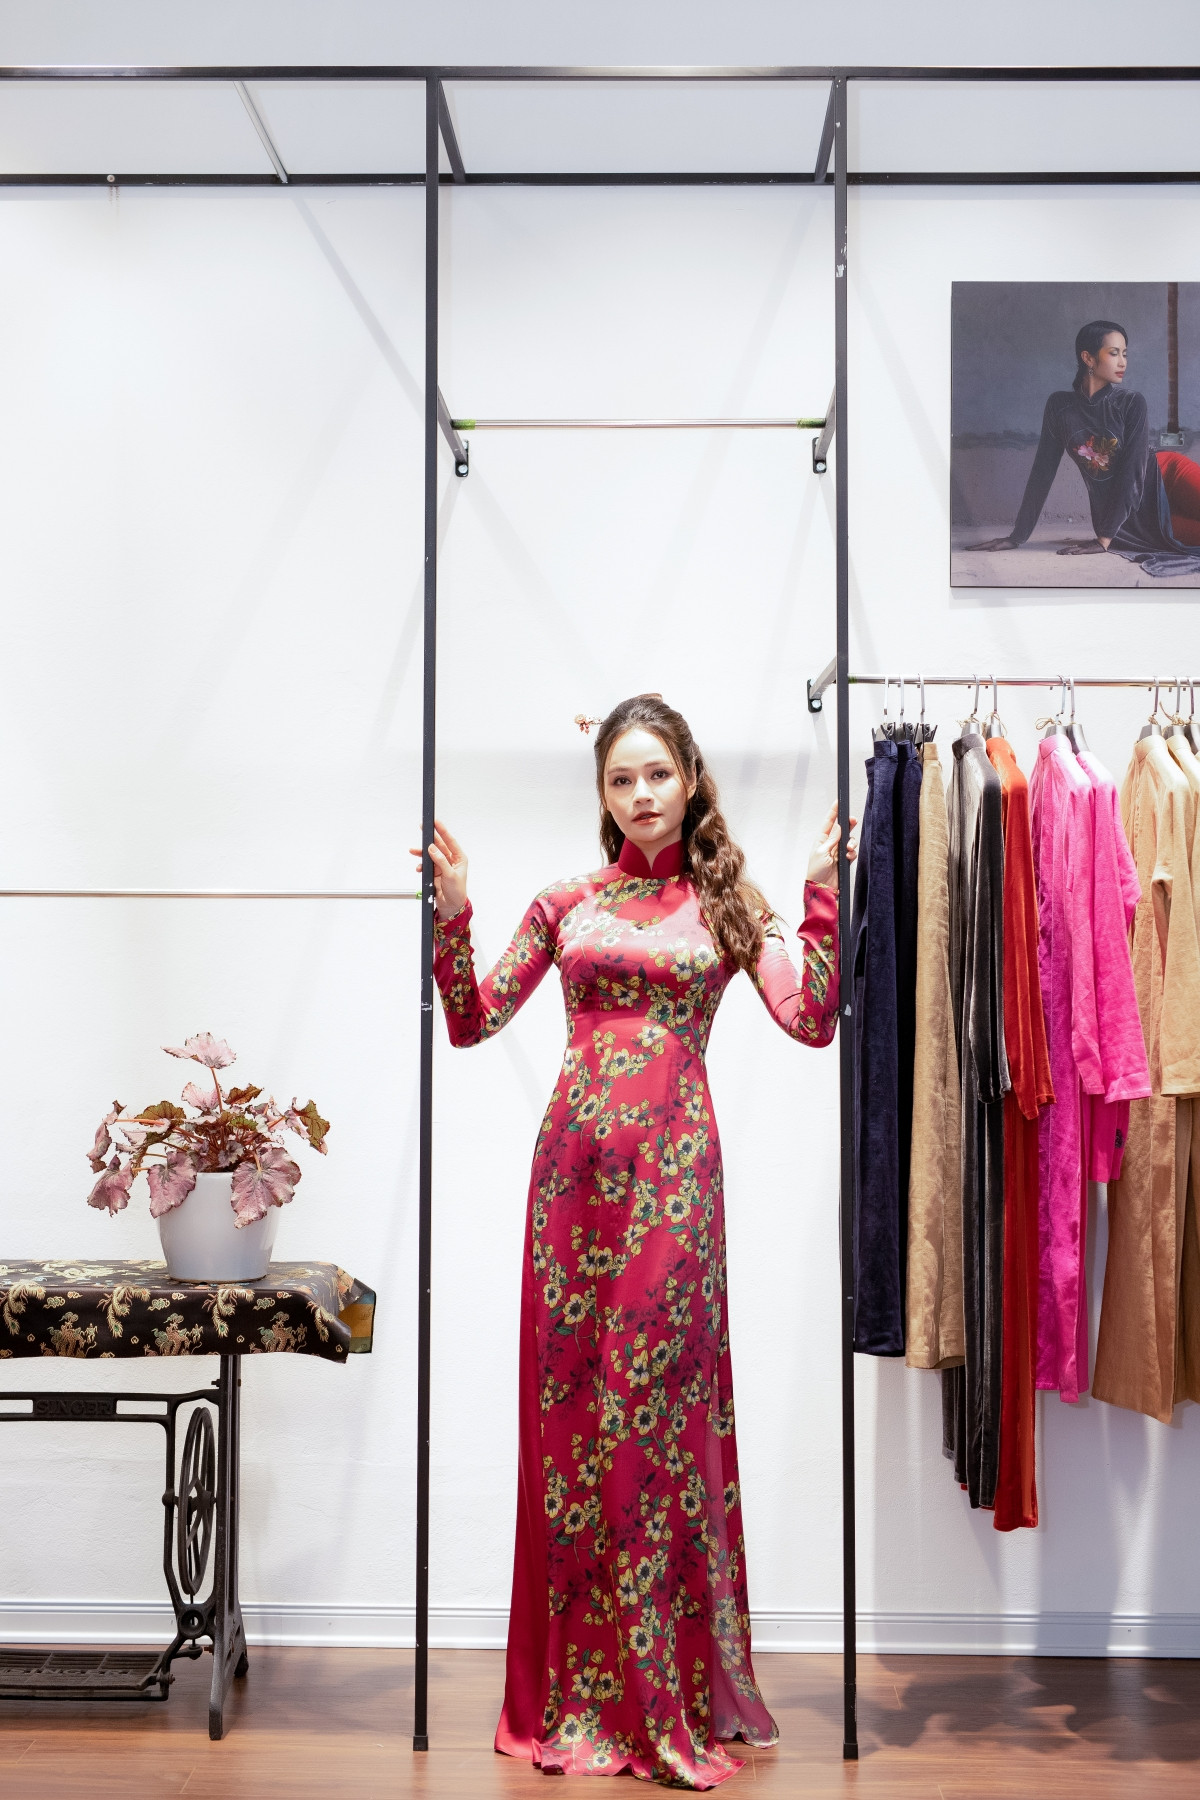 Vũ Thu Trang tâm sự, chị đến với nghề thiết kế áo dài là vì muốn giúp người phụ nữ Á Đông khoe được đường nét gợi cảm của cơ thể bên trong sự chuẩn mực của tà áo dài Việt Nam.